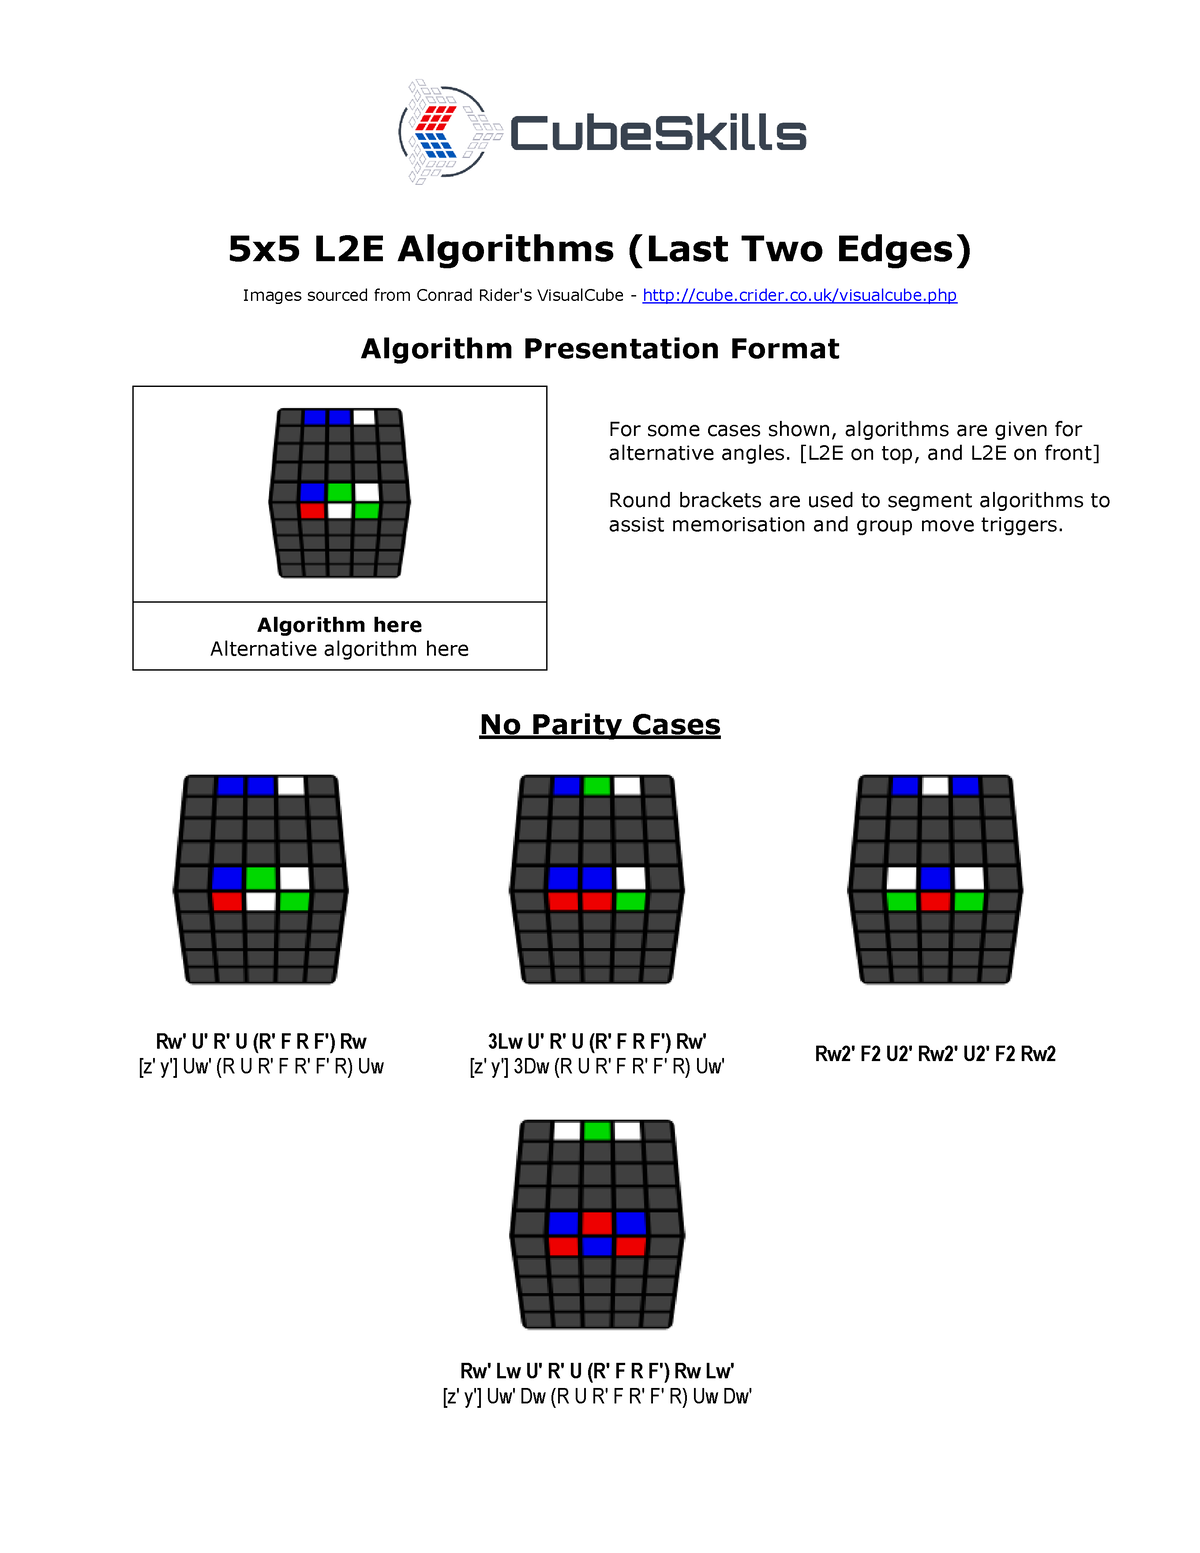 last-2-edges-algorithms-5x5-5x5-l2e-algorithms-last-two-edges